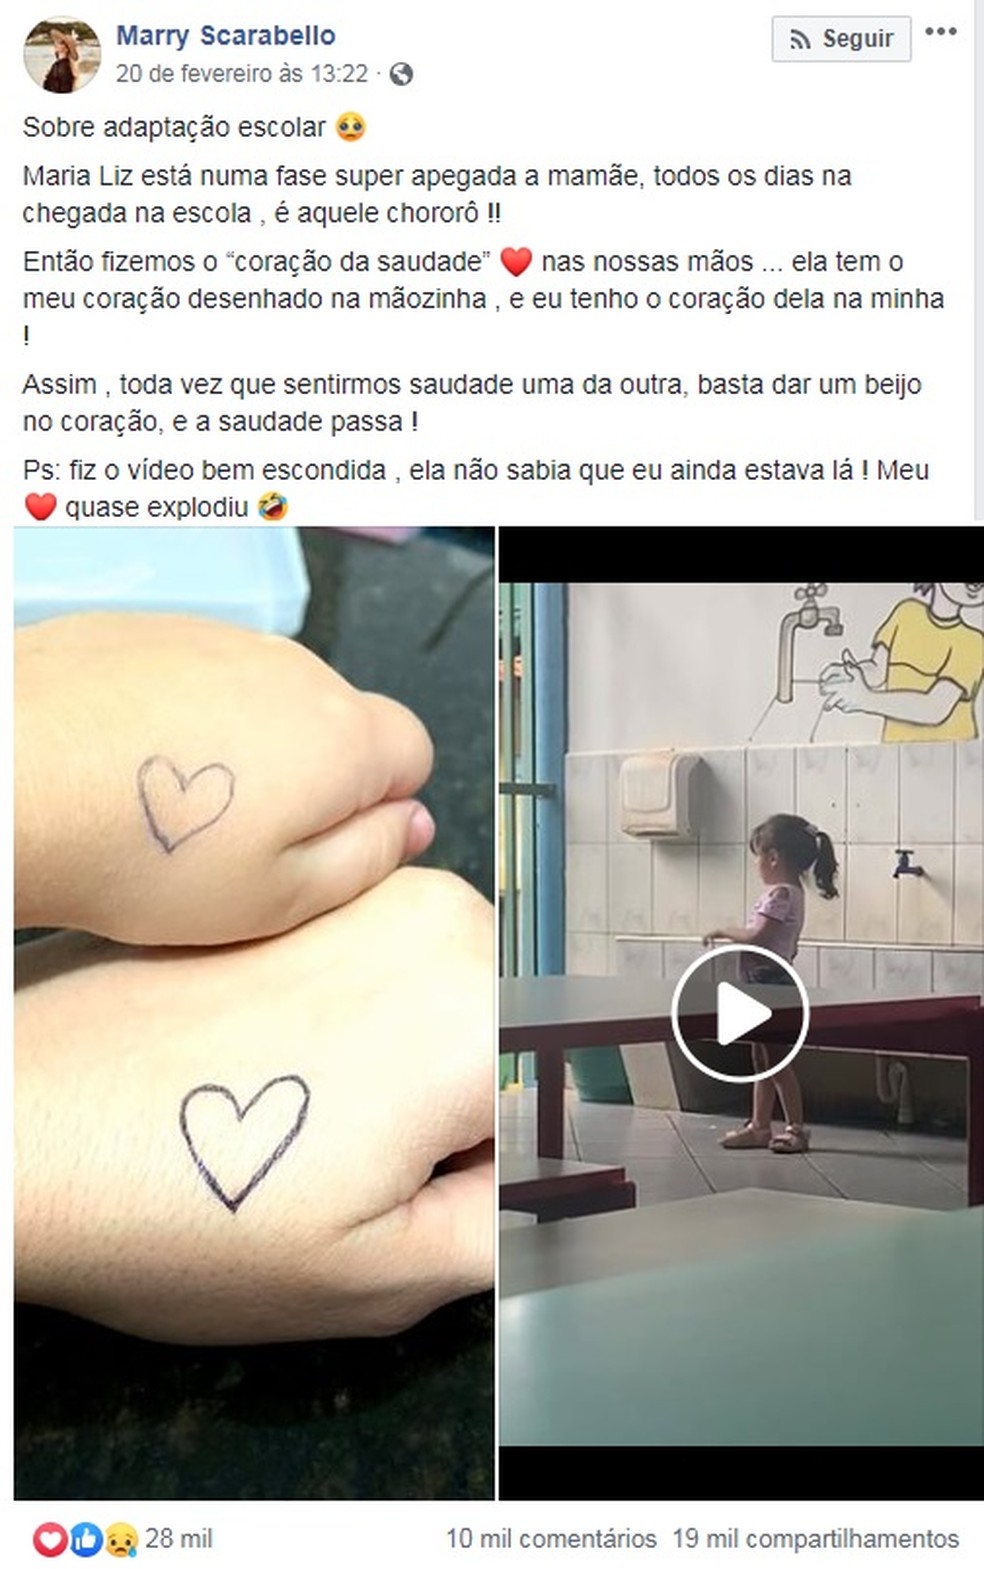 Em vídeo comovente, menina beija coração desenhado na mão para diminuir  saudade da mãe na escola | Bauru e Marília | G1